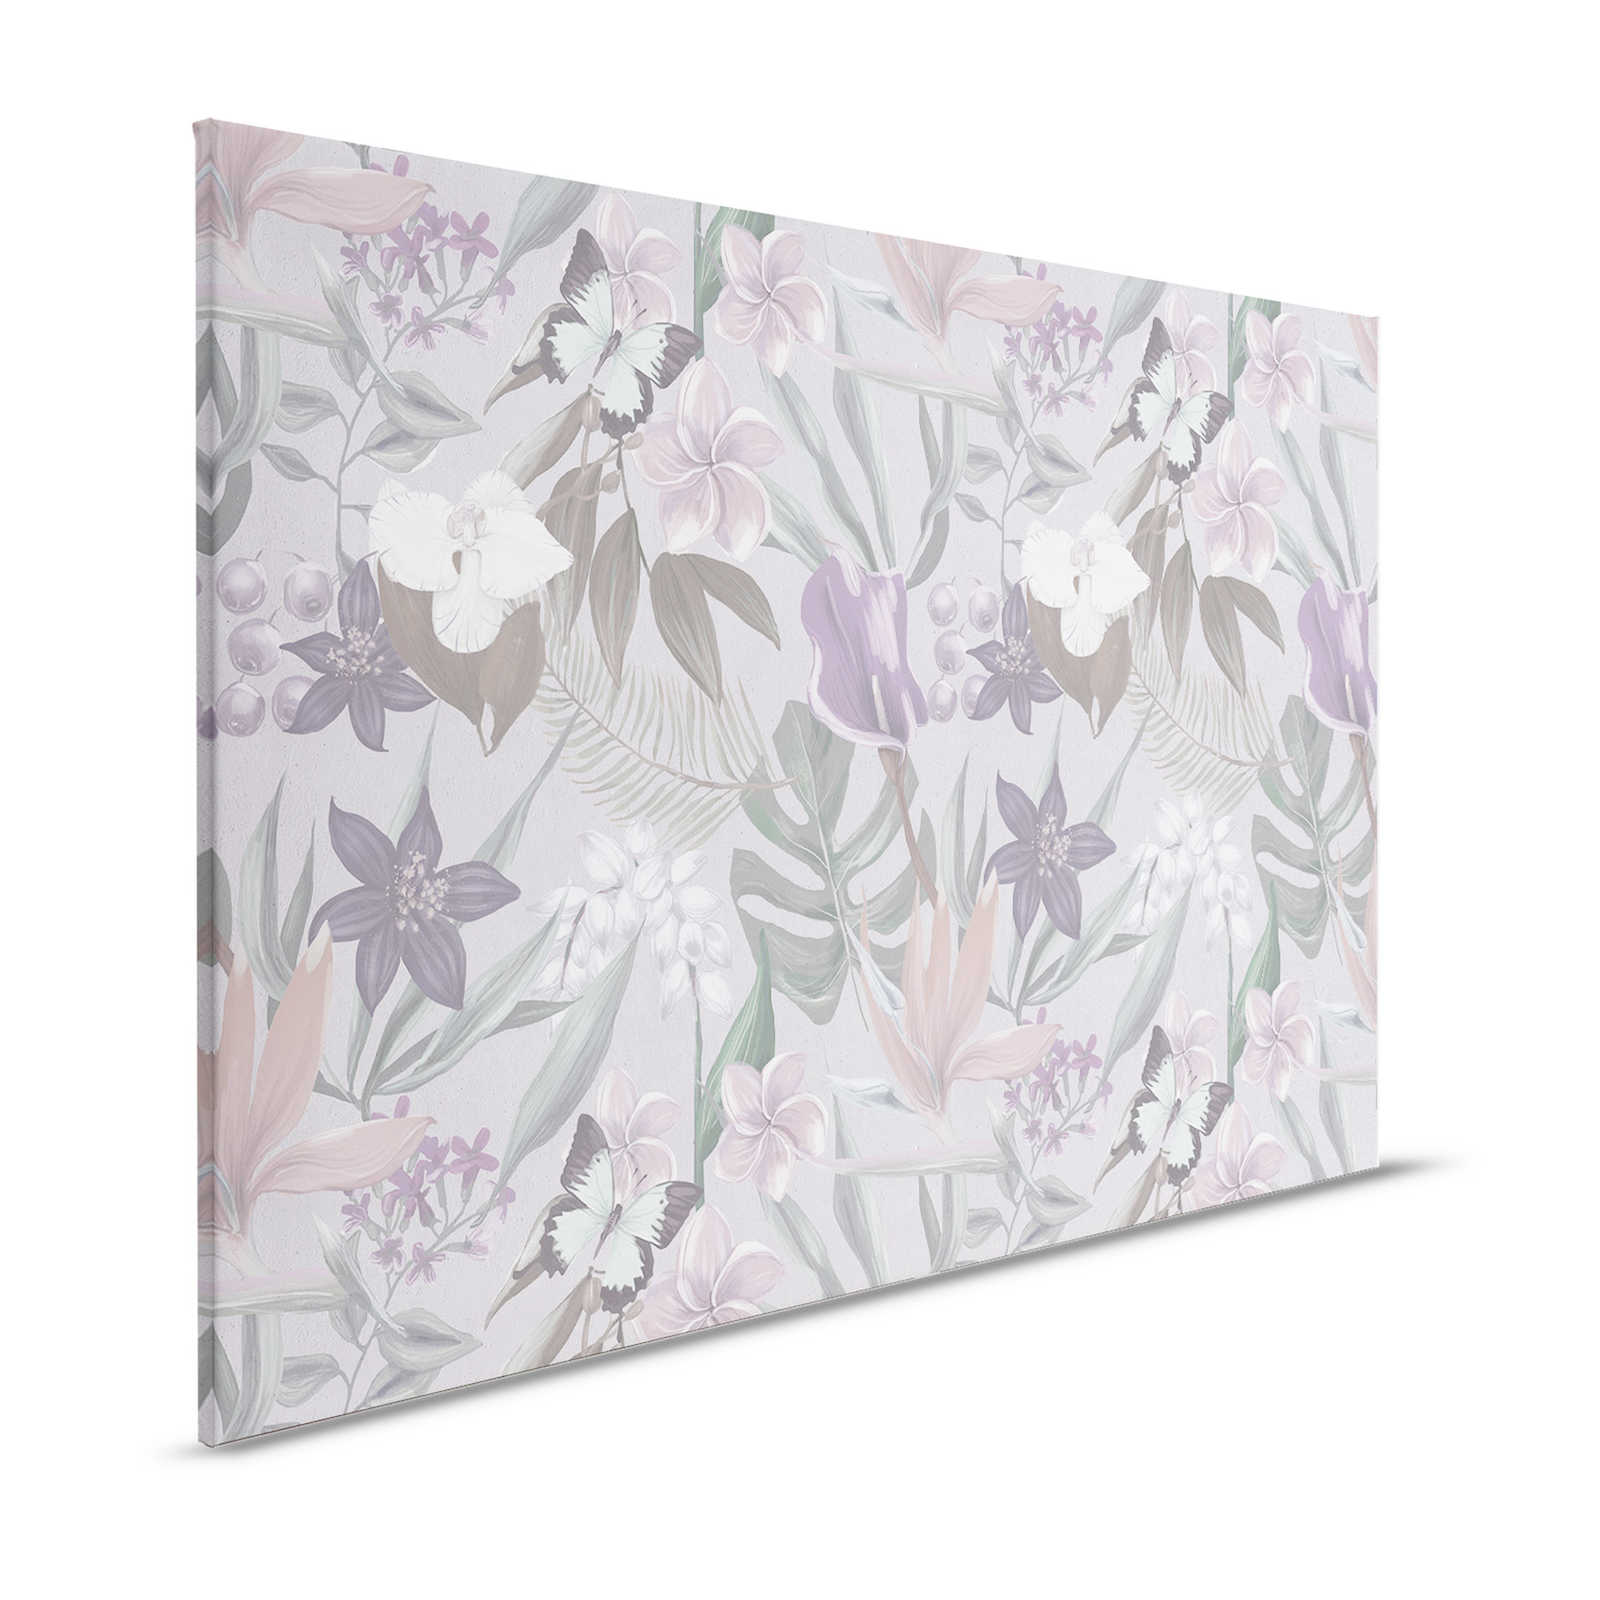 Florales Dschungel Leinwandbild gezeichnet | rosa, weiß – 1,20 m x 0,80 m
